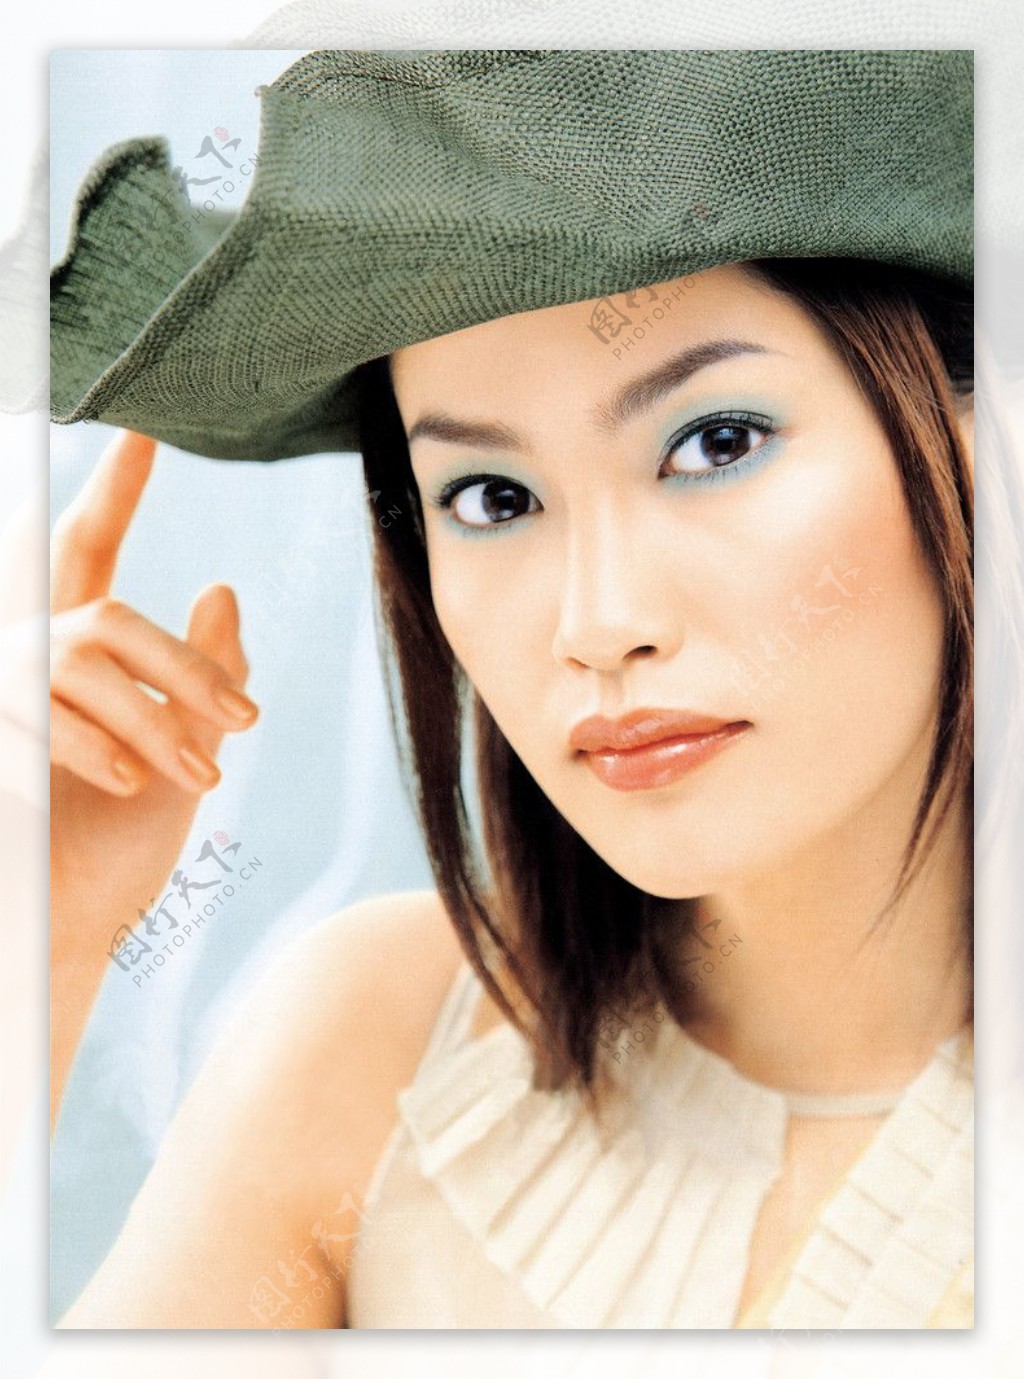 日本护肤品彩妆女性人物模特图片